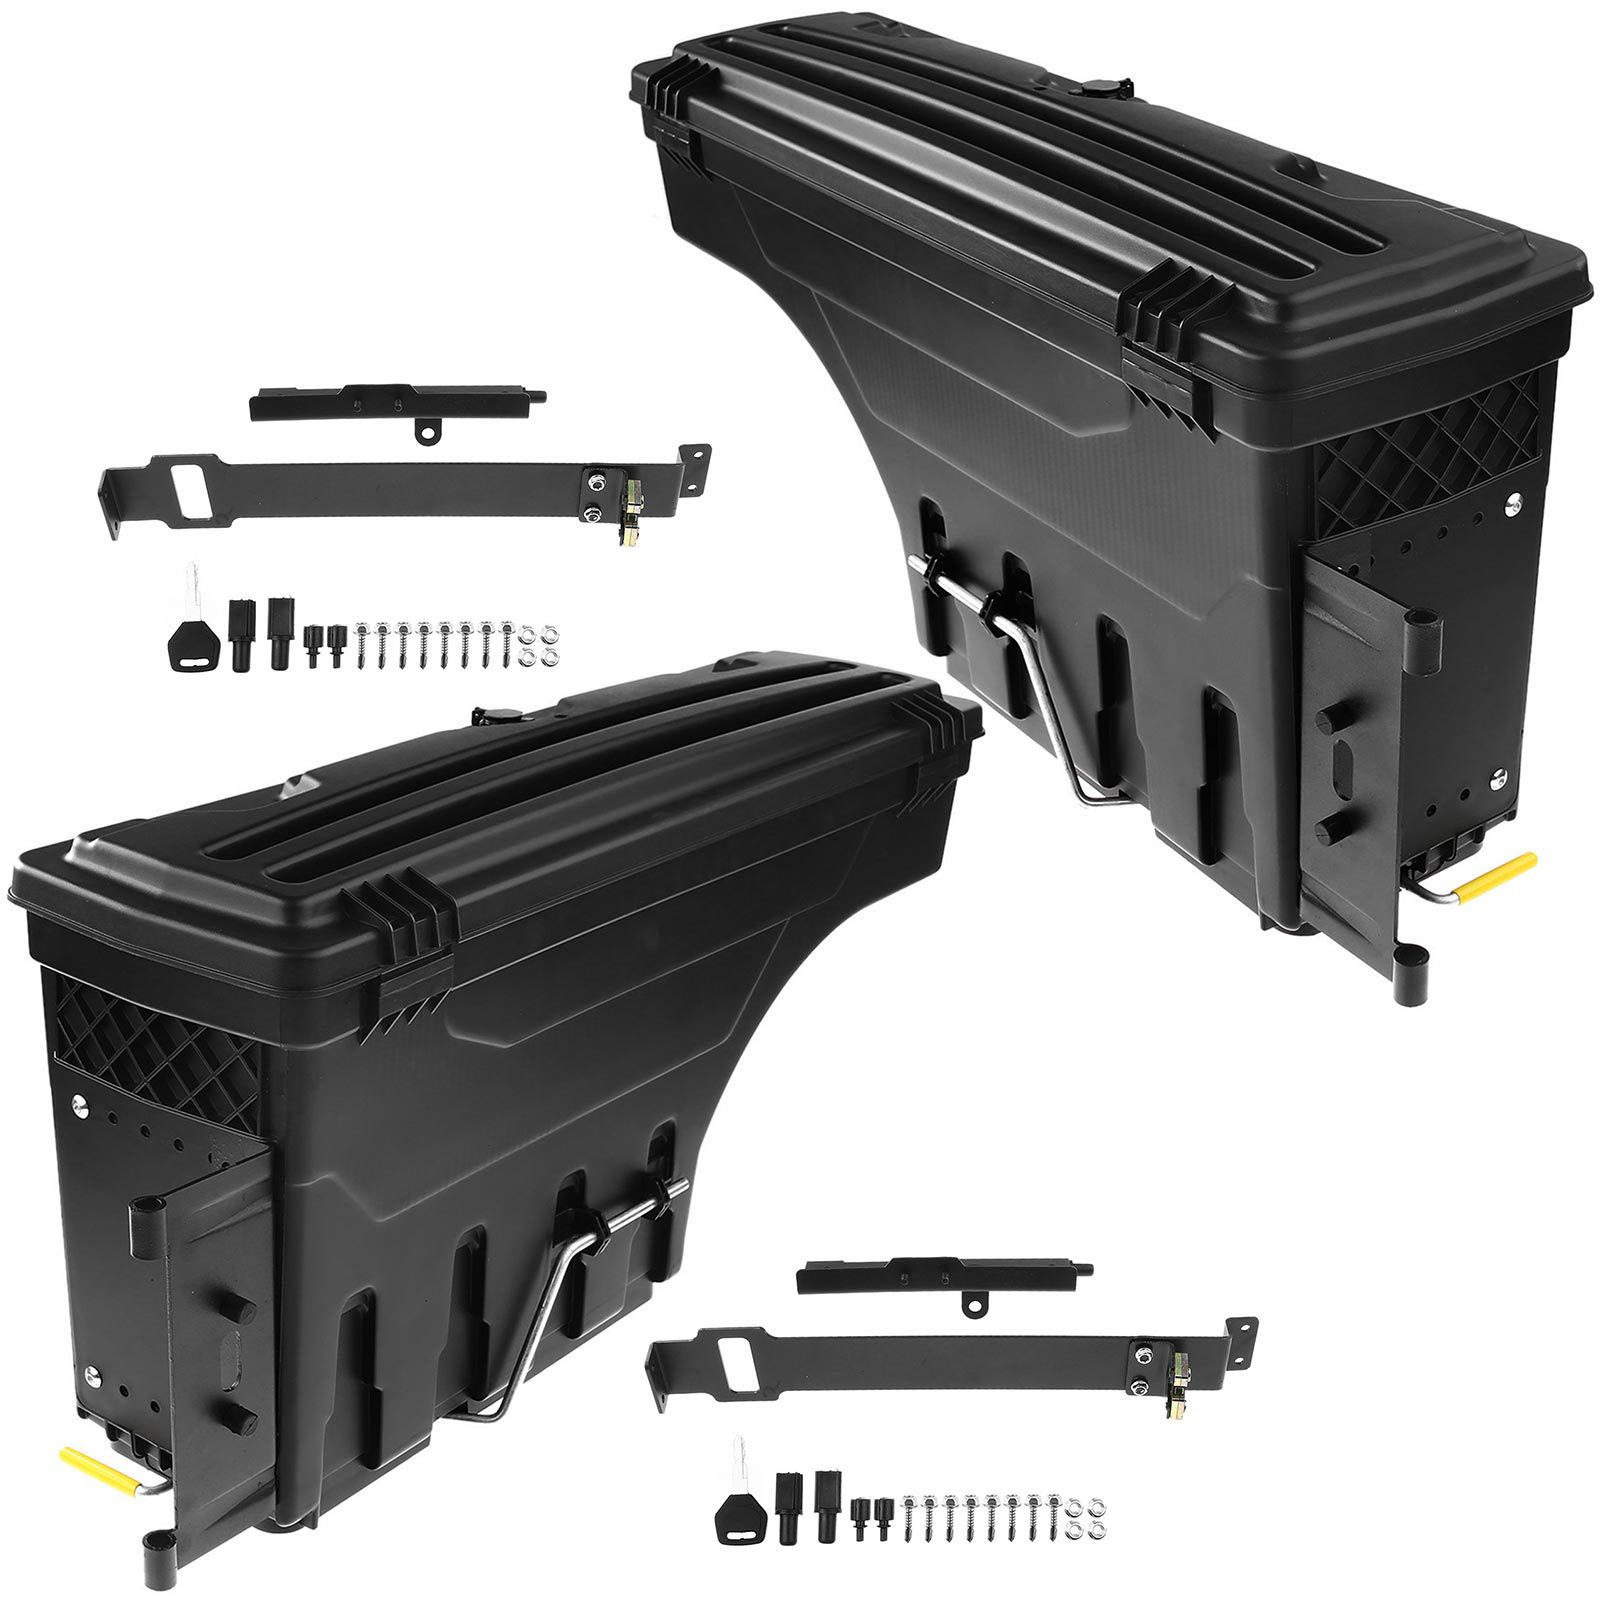 2 Pcs Rear Truck Bed Storage Box Toolbox for Nissan Titan Titan XD 2016-2021